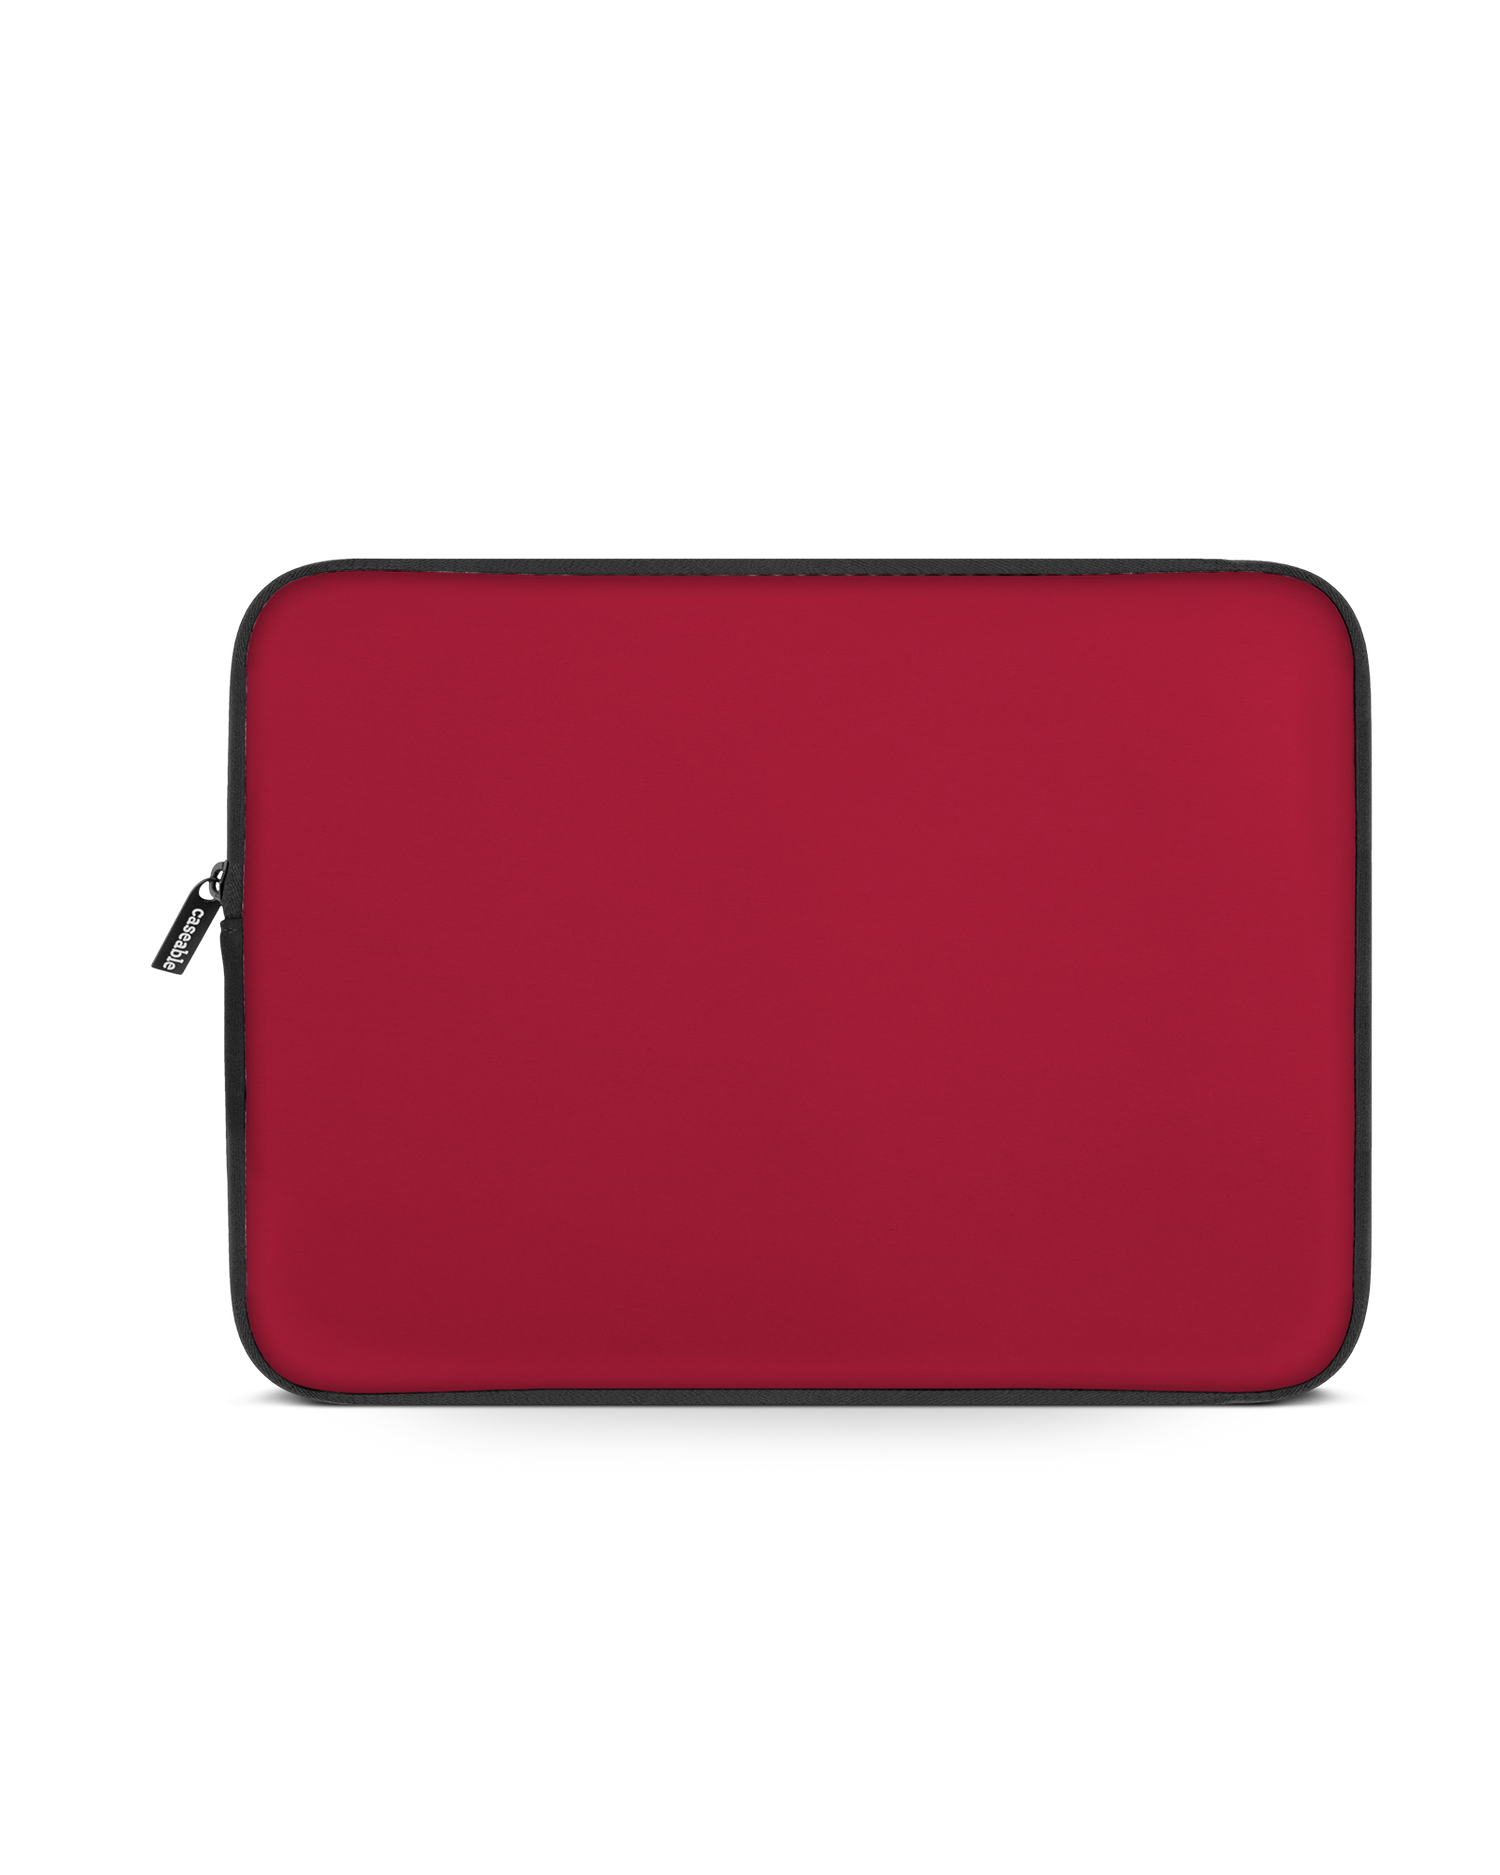 RED Laptophülle 13 Zoll: Vorderansicht